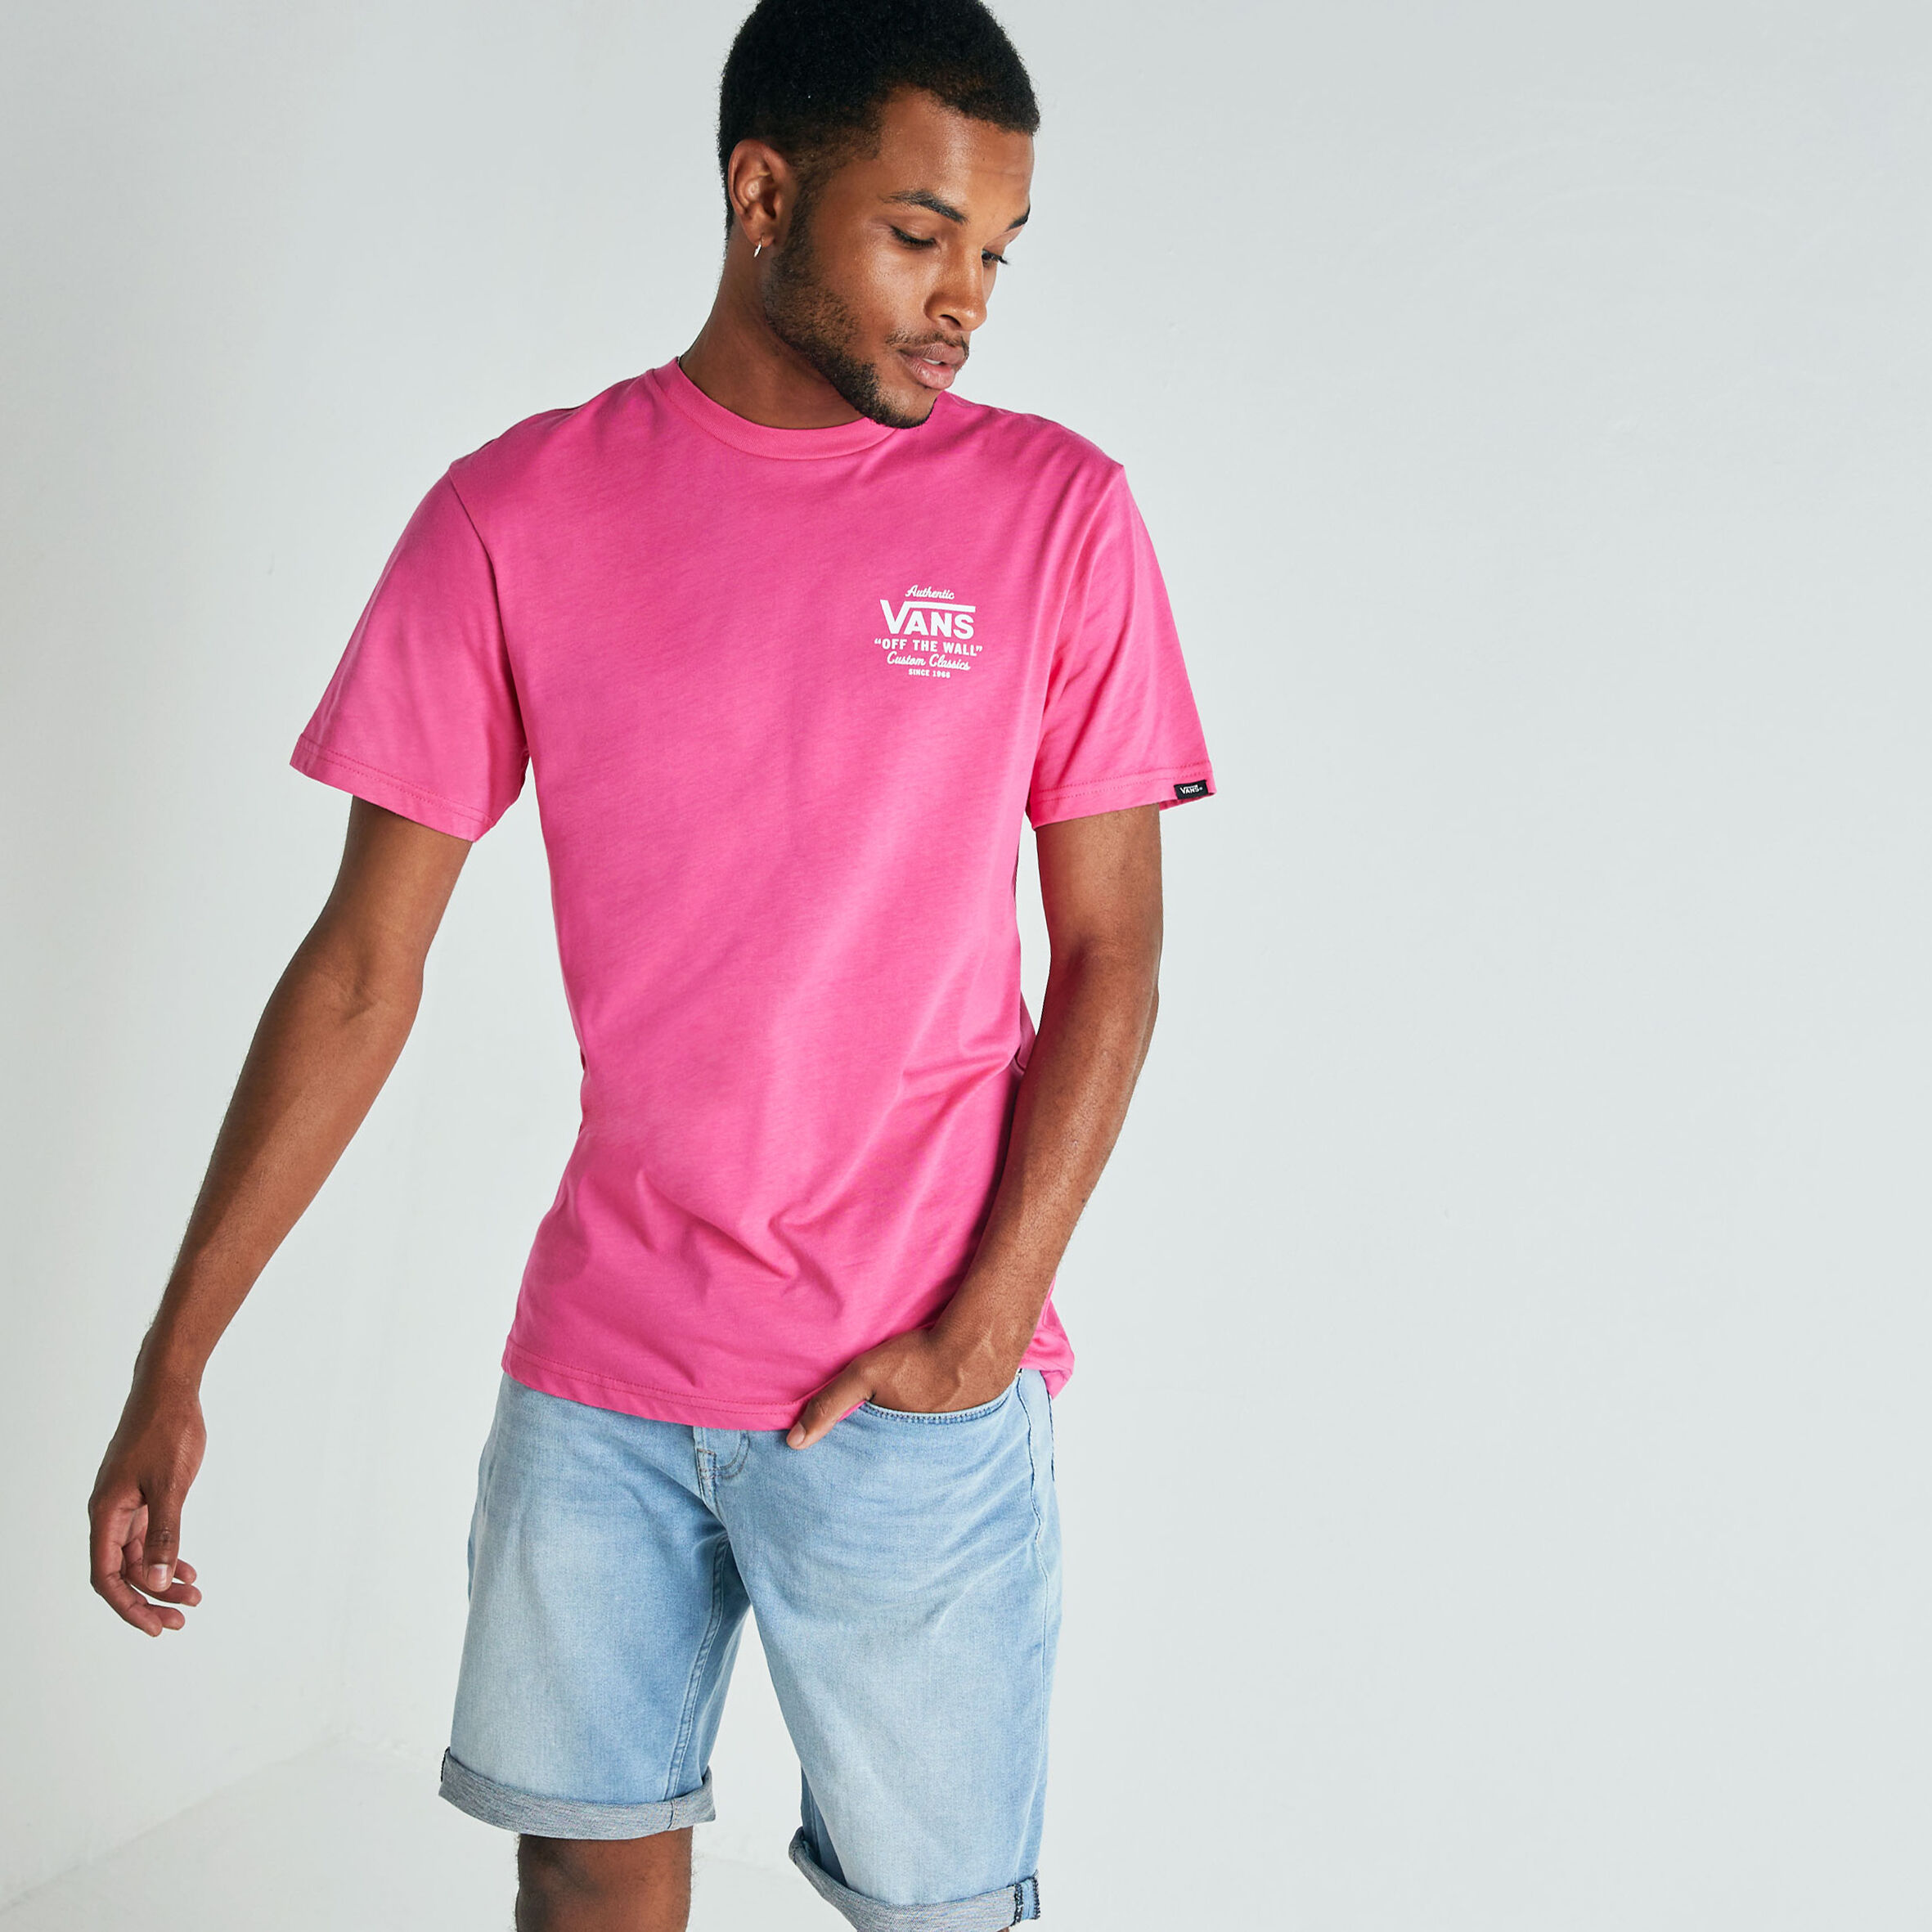 Men T-shirt Vans Street Pink Buy Online 